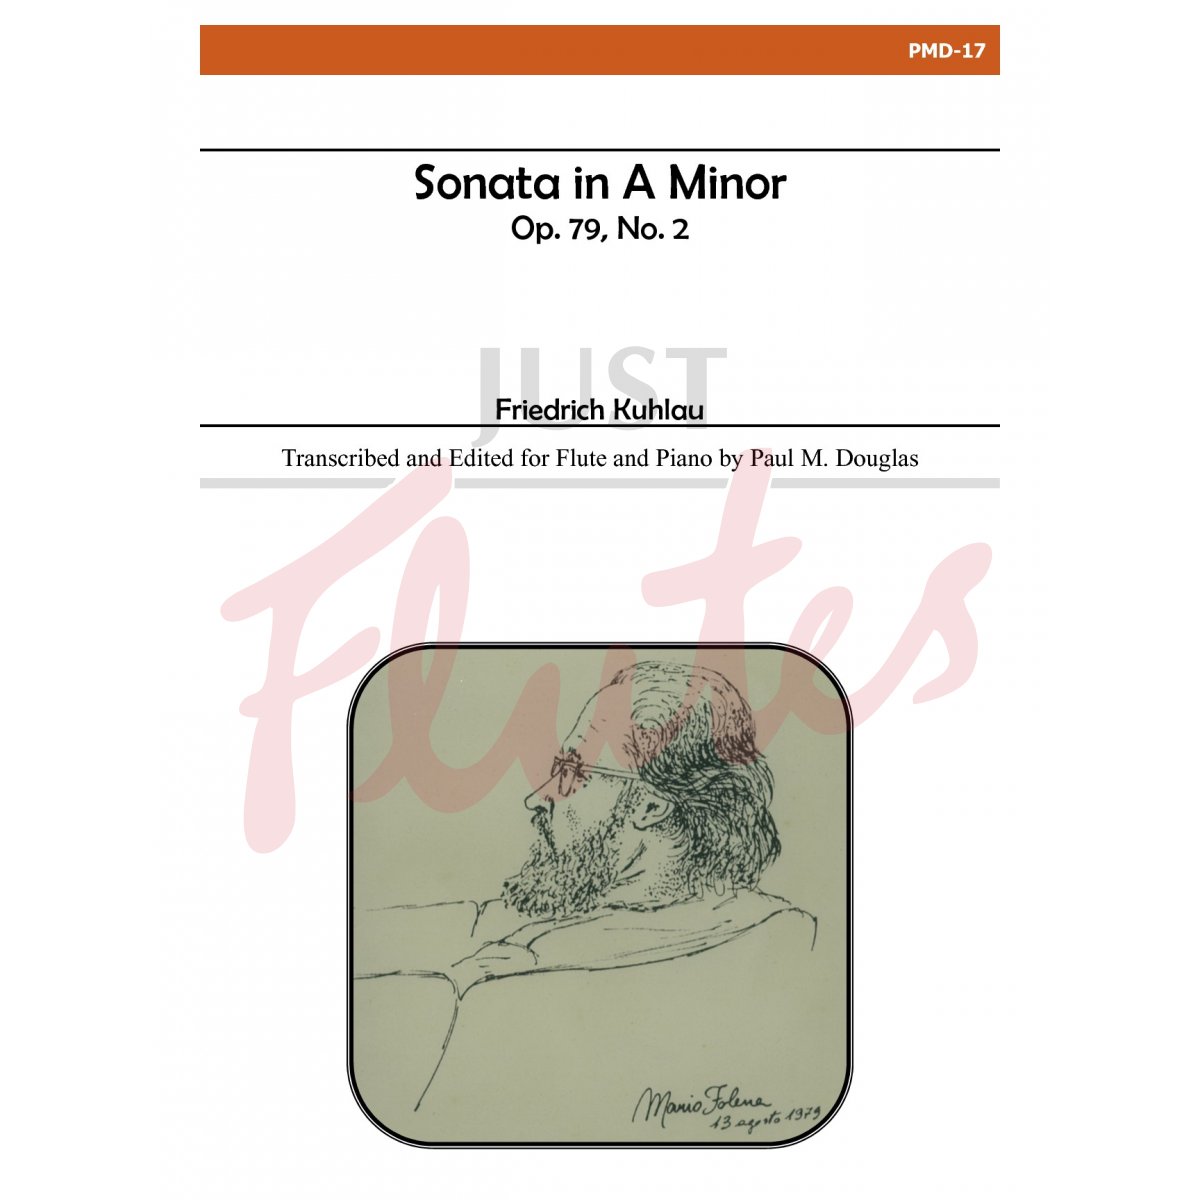 Three Sonatas, Vol. II: Sonata in A Major